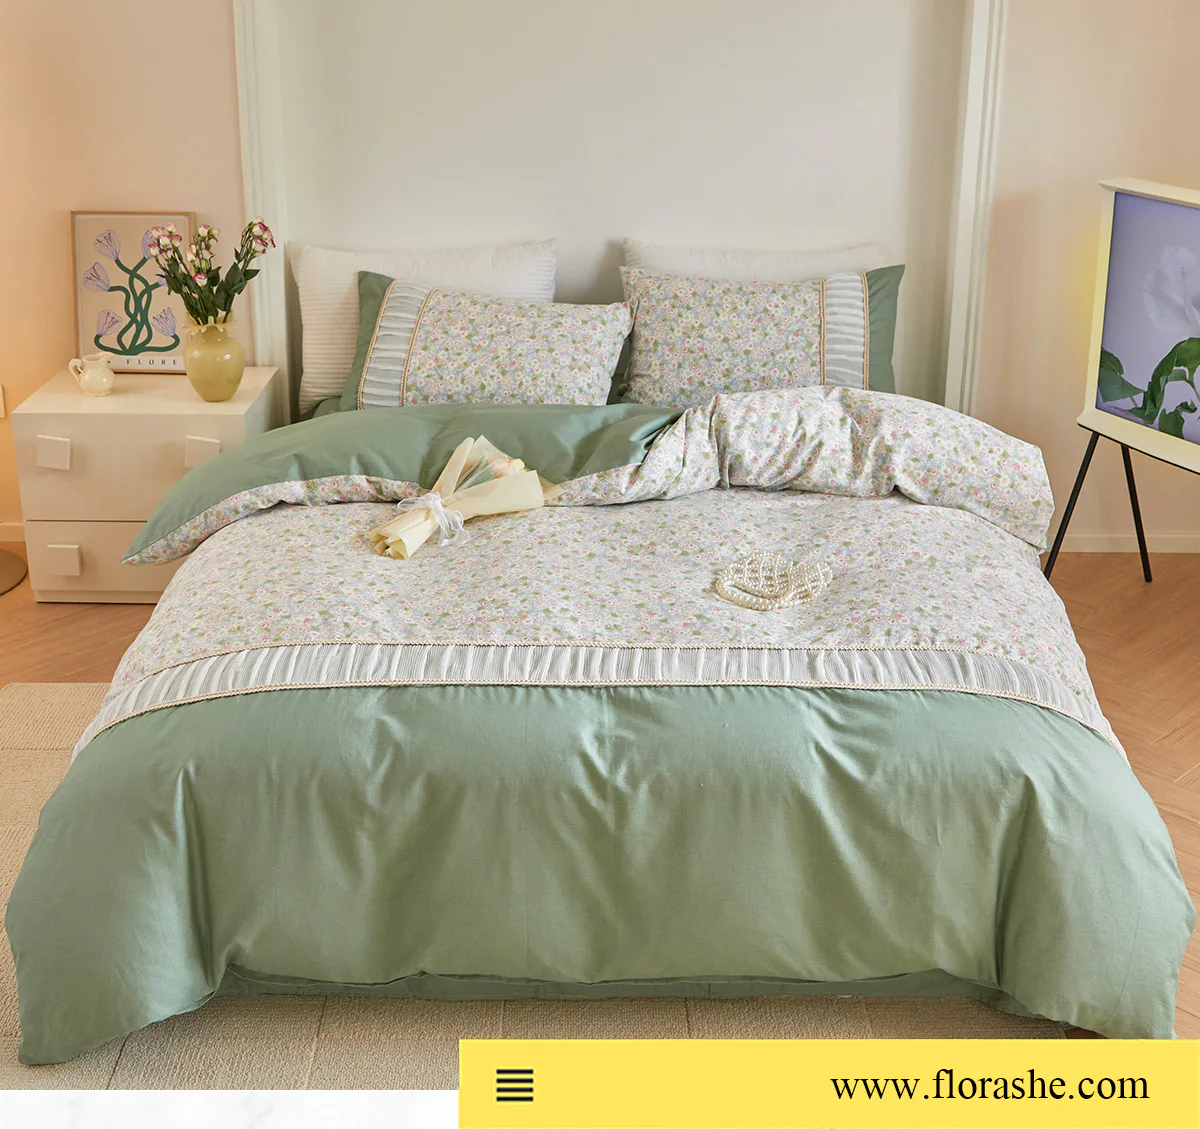 Retro-Princess-Style-100-Cotton-Floral-Duvet-Cover-Bedding-Set15